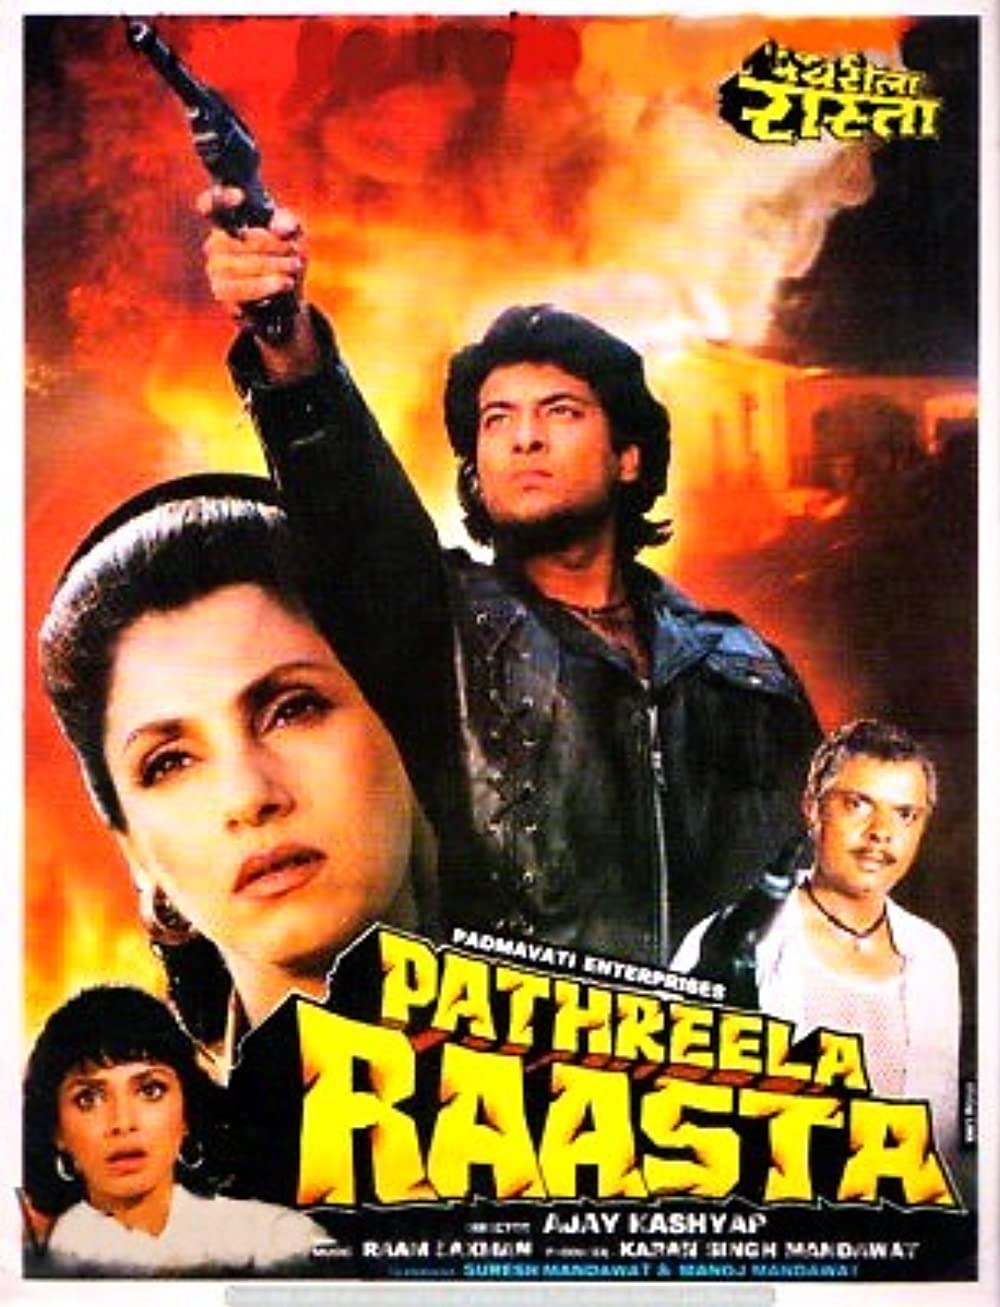 Pathreela Raasta Poster